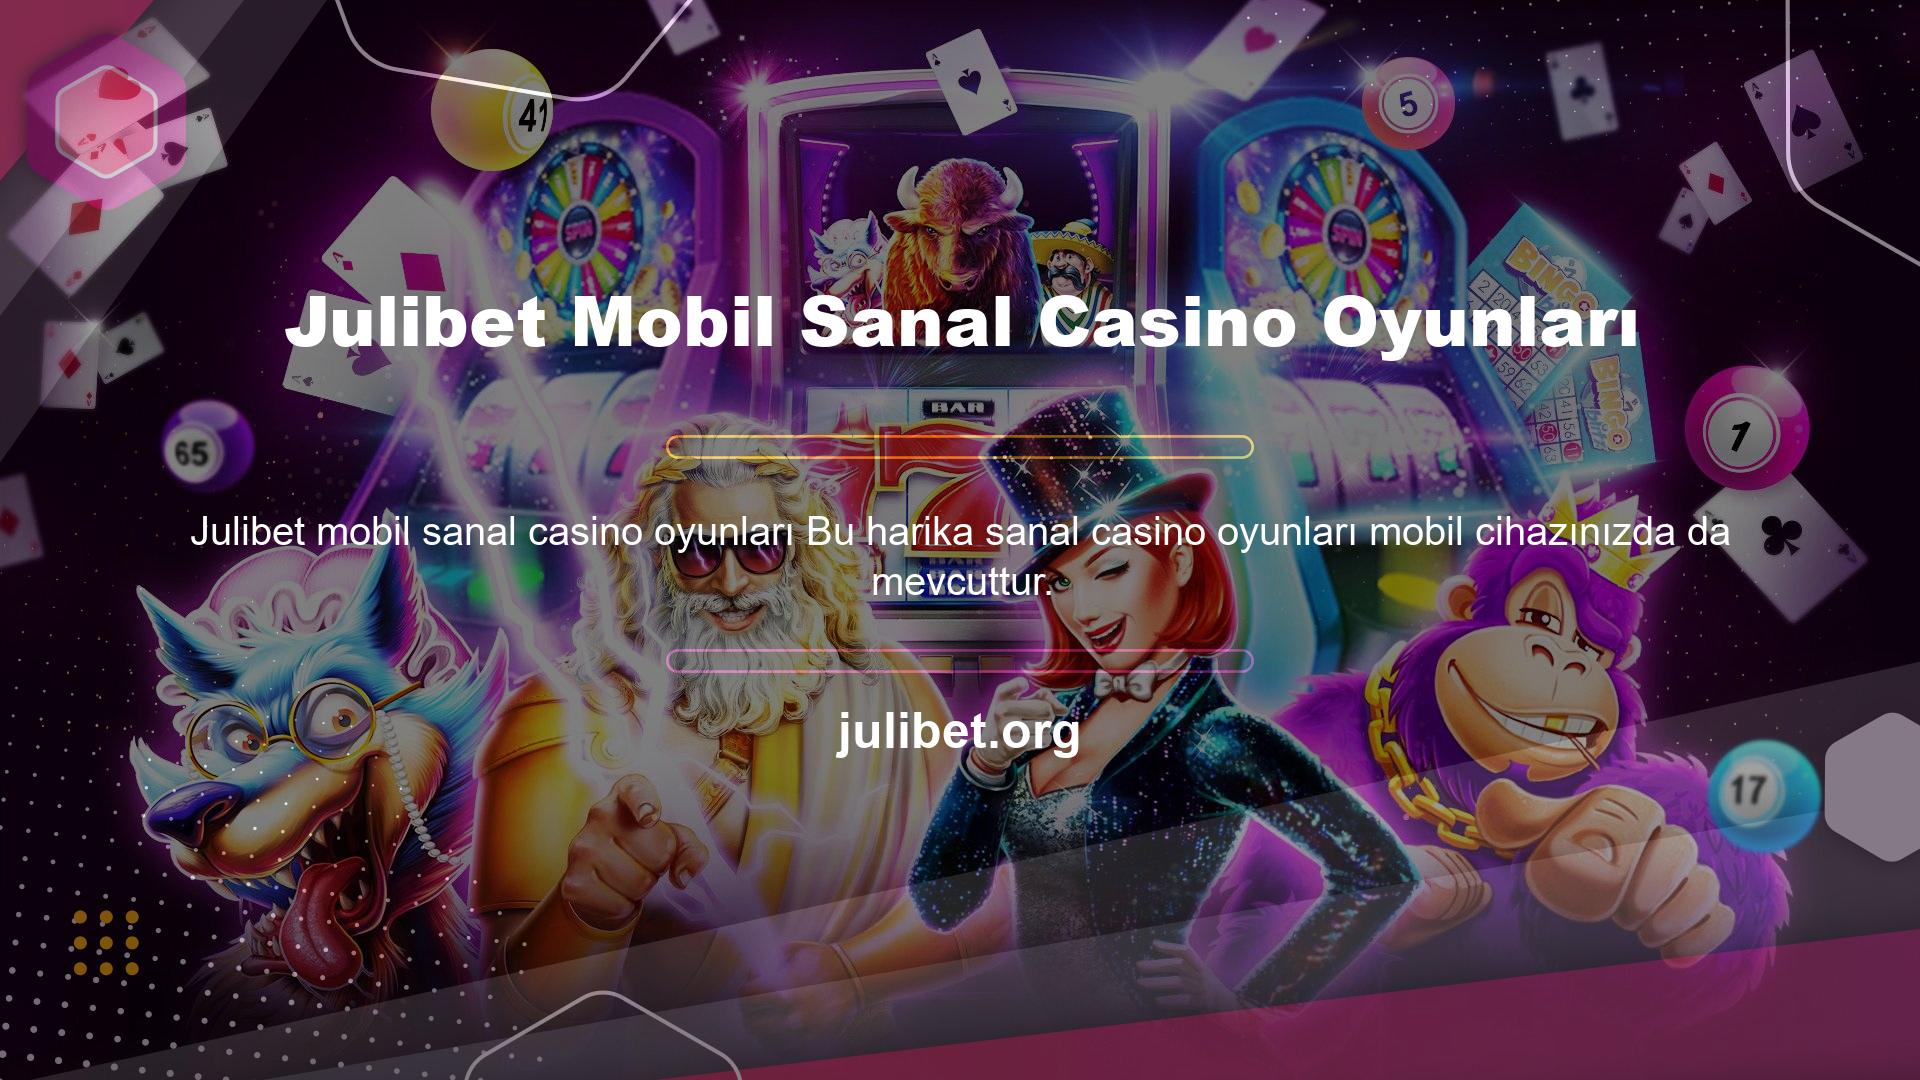 Julibet web sitesi, üyeleri mobil sistemleri etkin bir şekilde kullanmaları için desteklemekte ve teşvik etmektedir